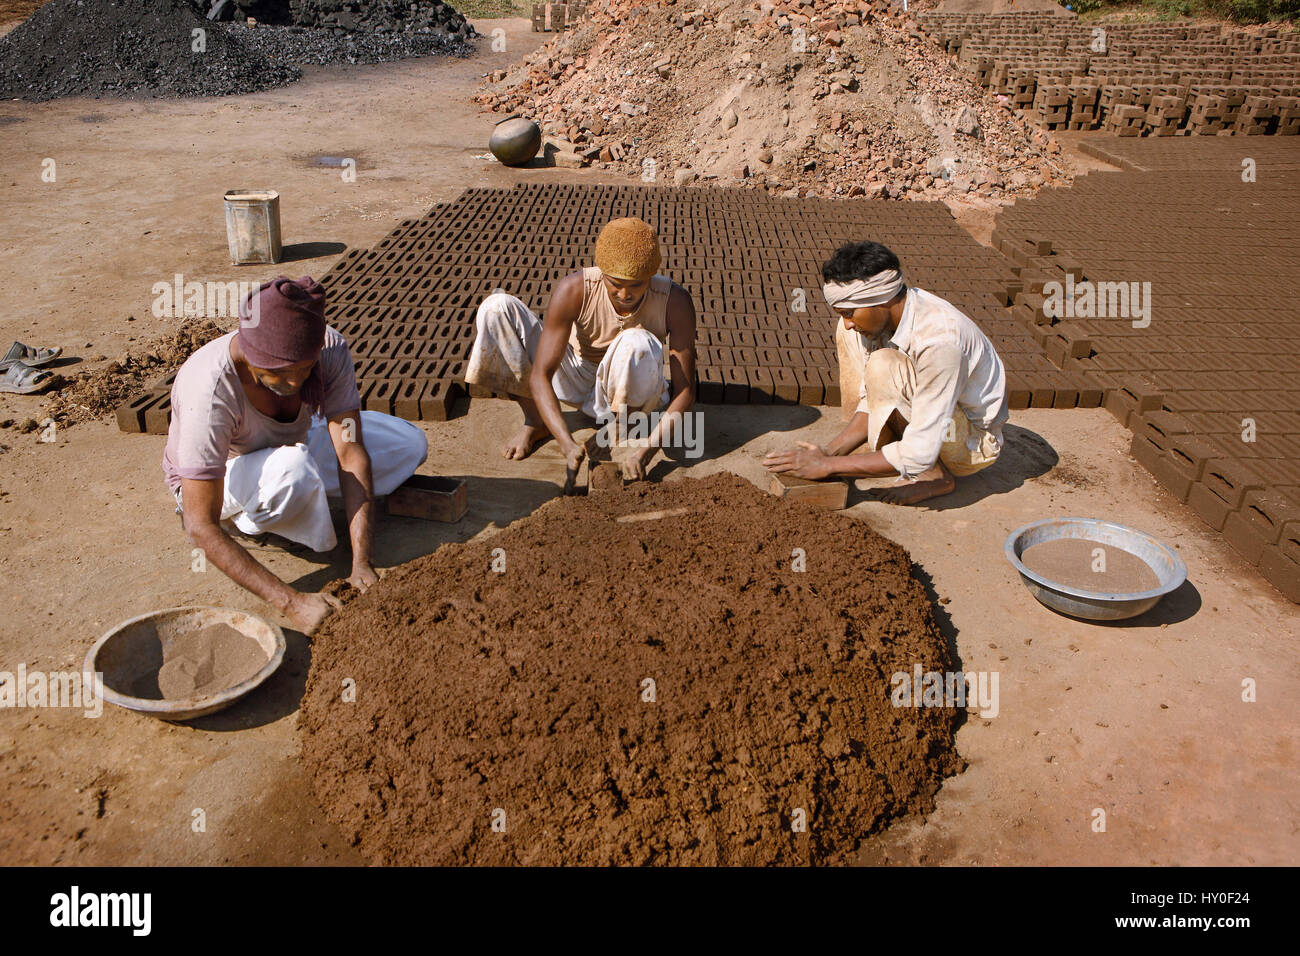 Man making bricks, barwani, madhya pradesh, india, asia Stock Photo